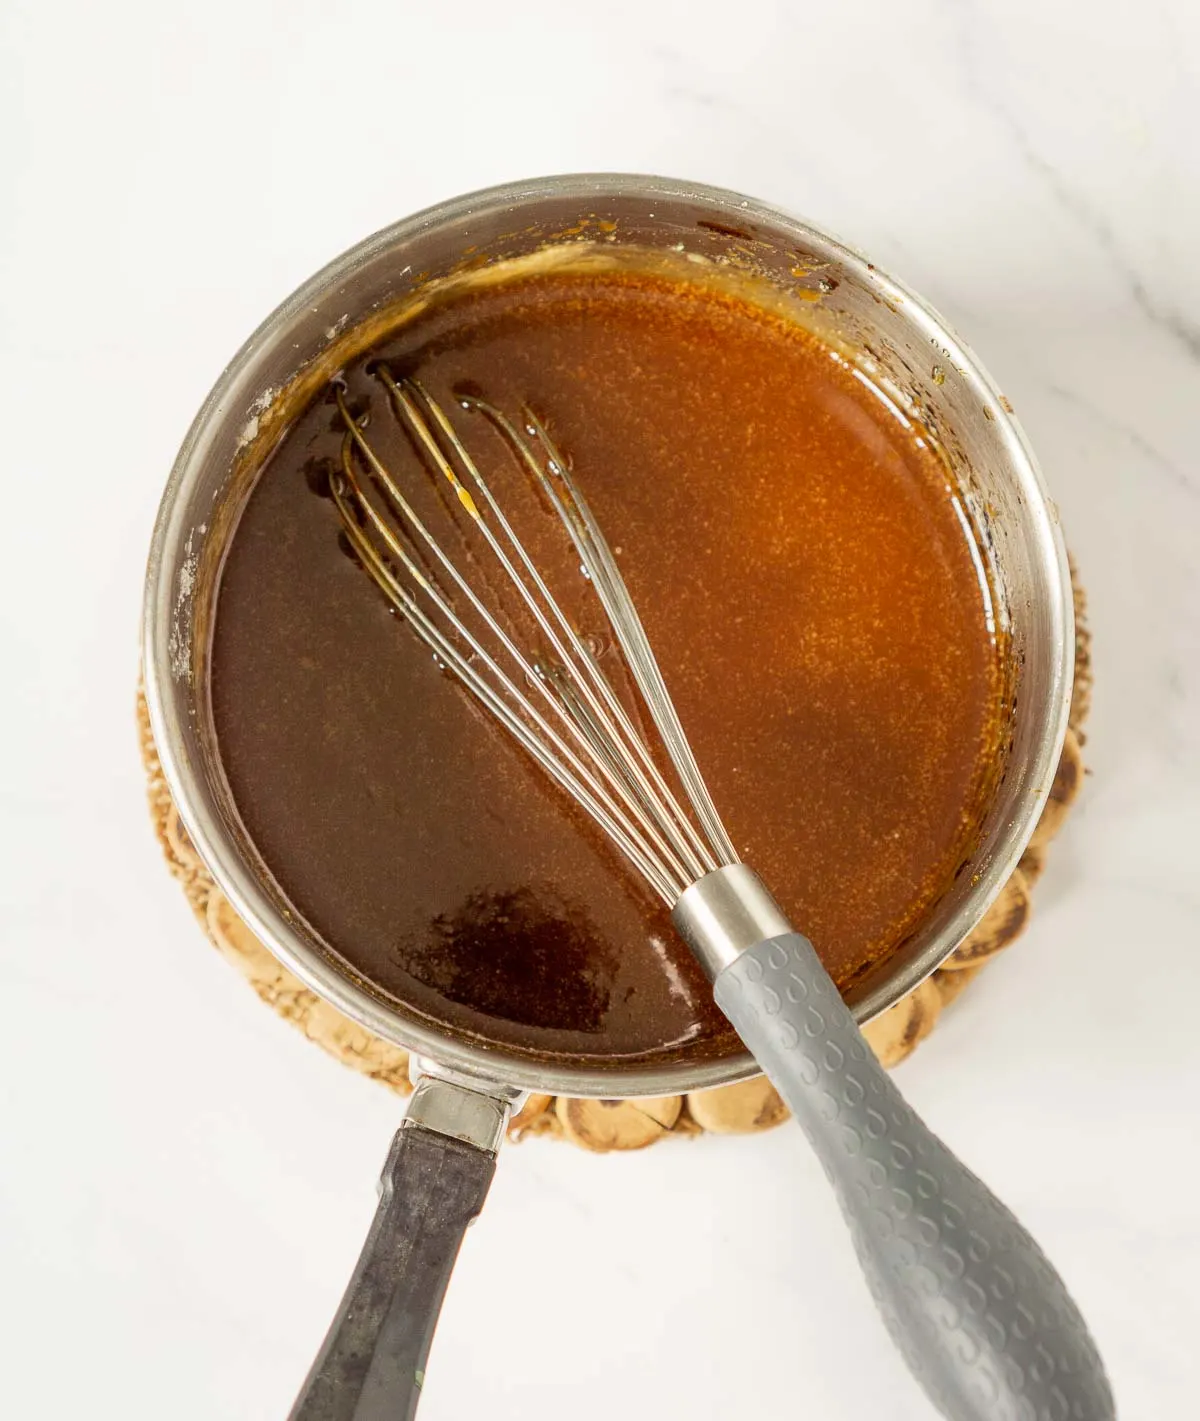 Pot of homemade caramel sauce